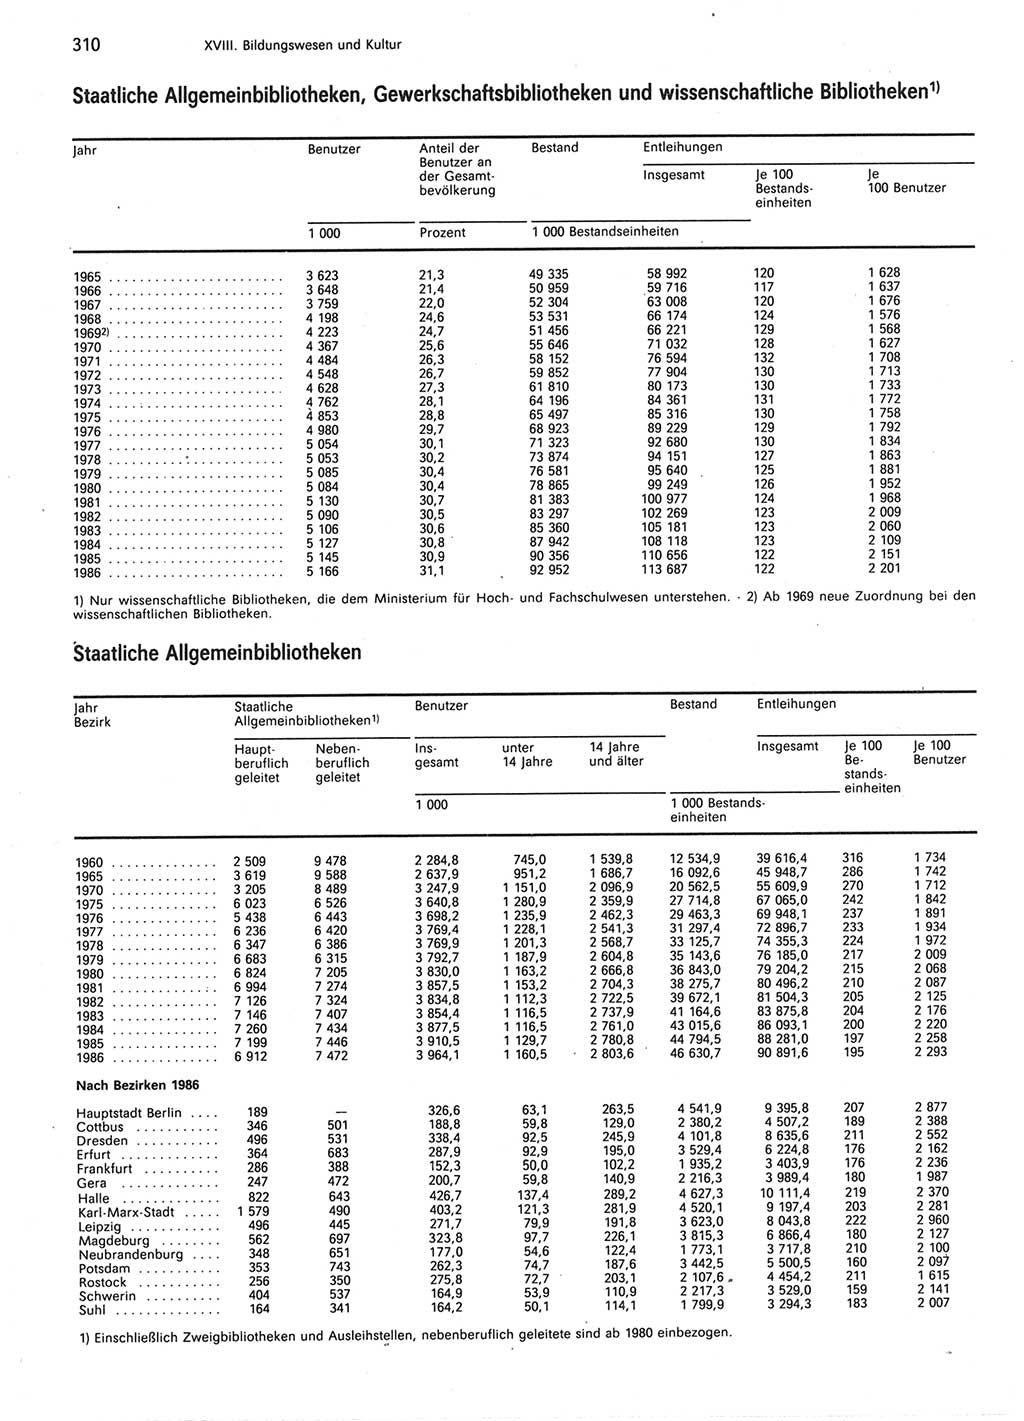 Statistisches Jahrbuch der Deutschen Demokratischen Republik (DDR) 1987, Seite 310 (Stat. Jb. DDR 1987, S. 310)